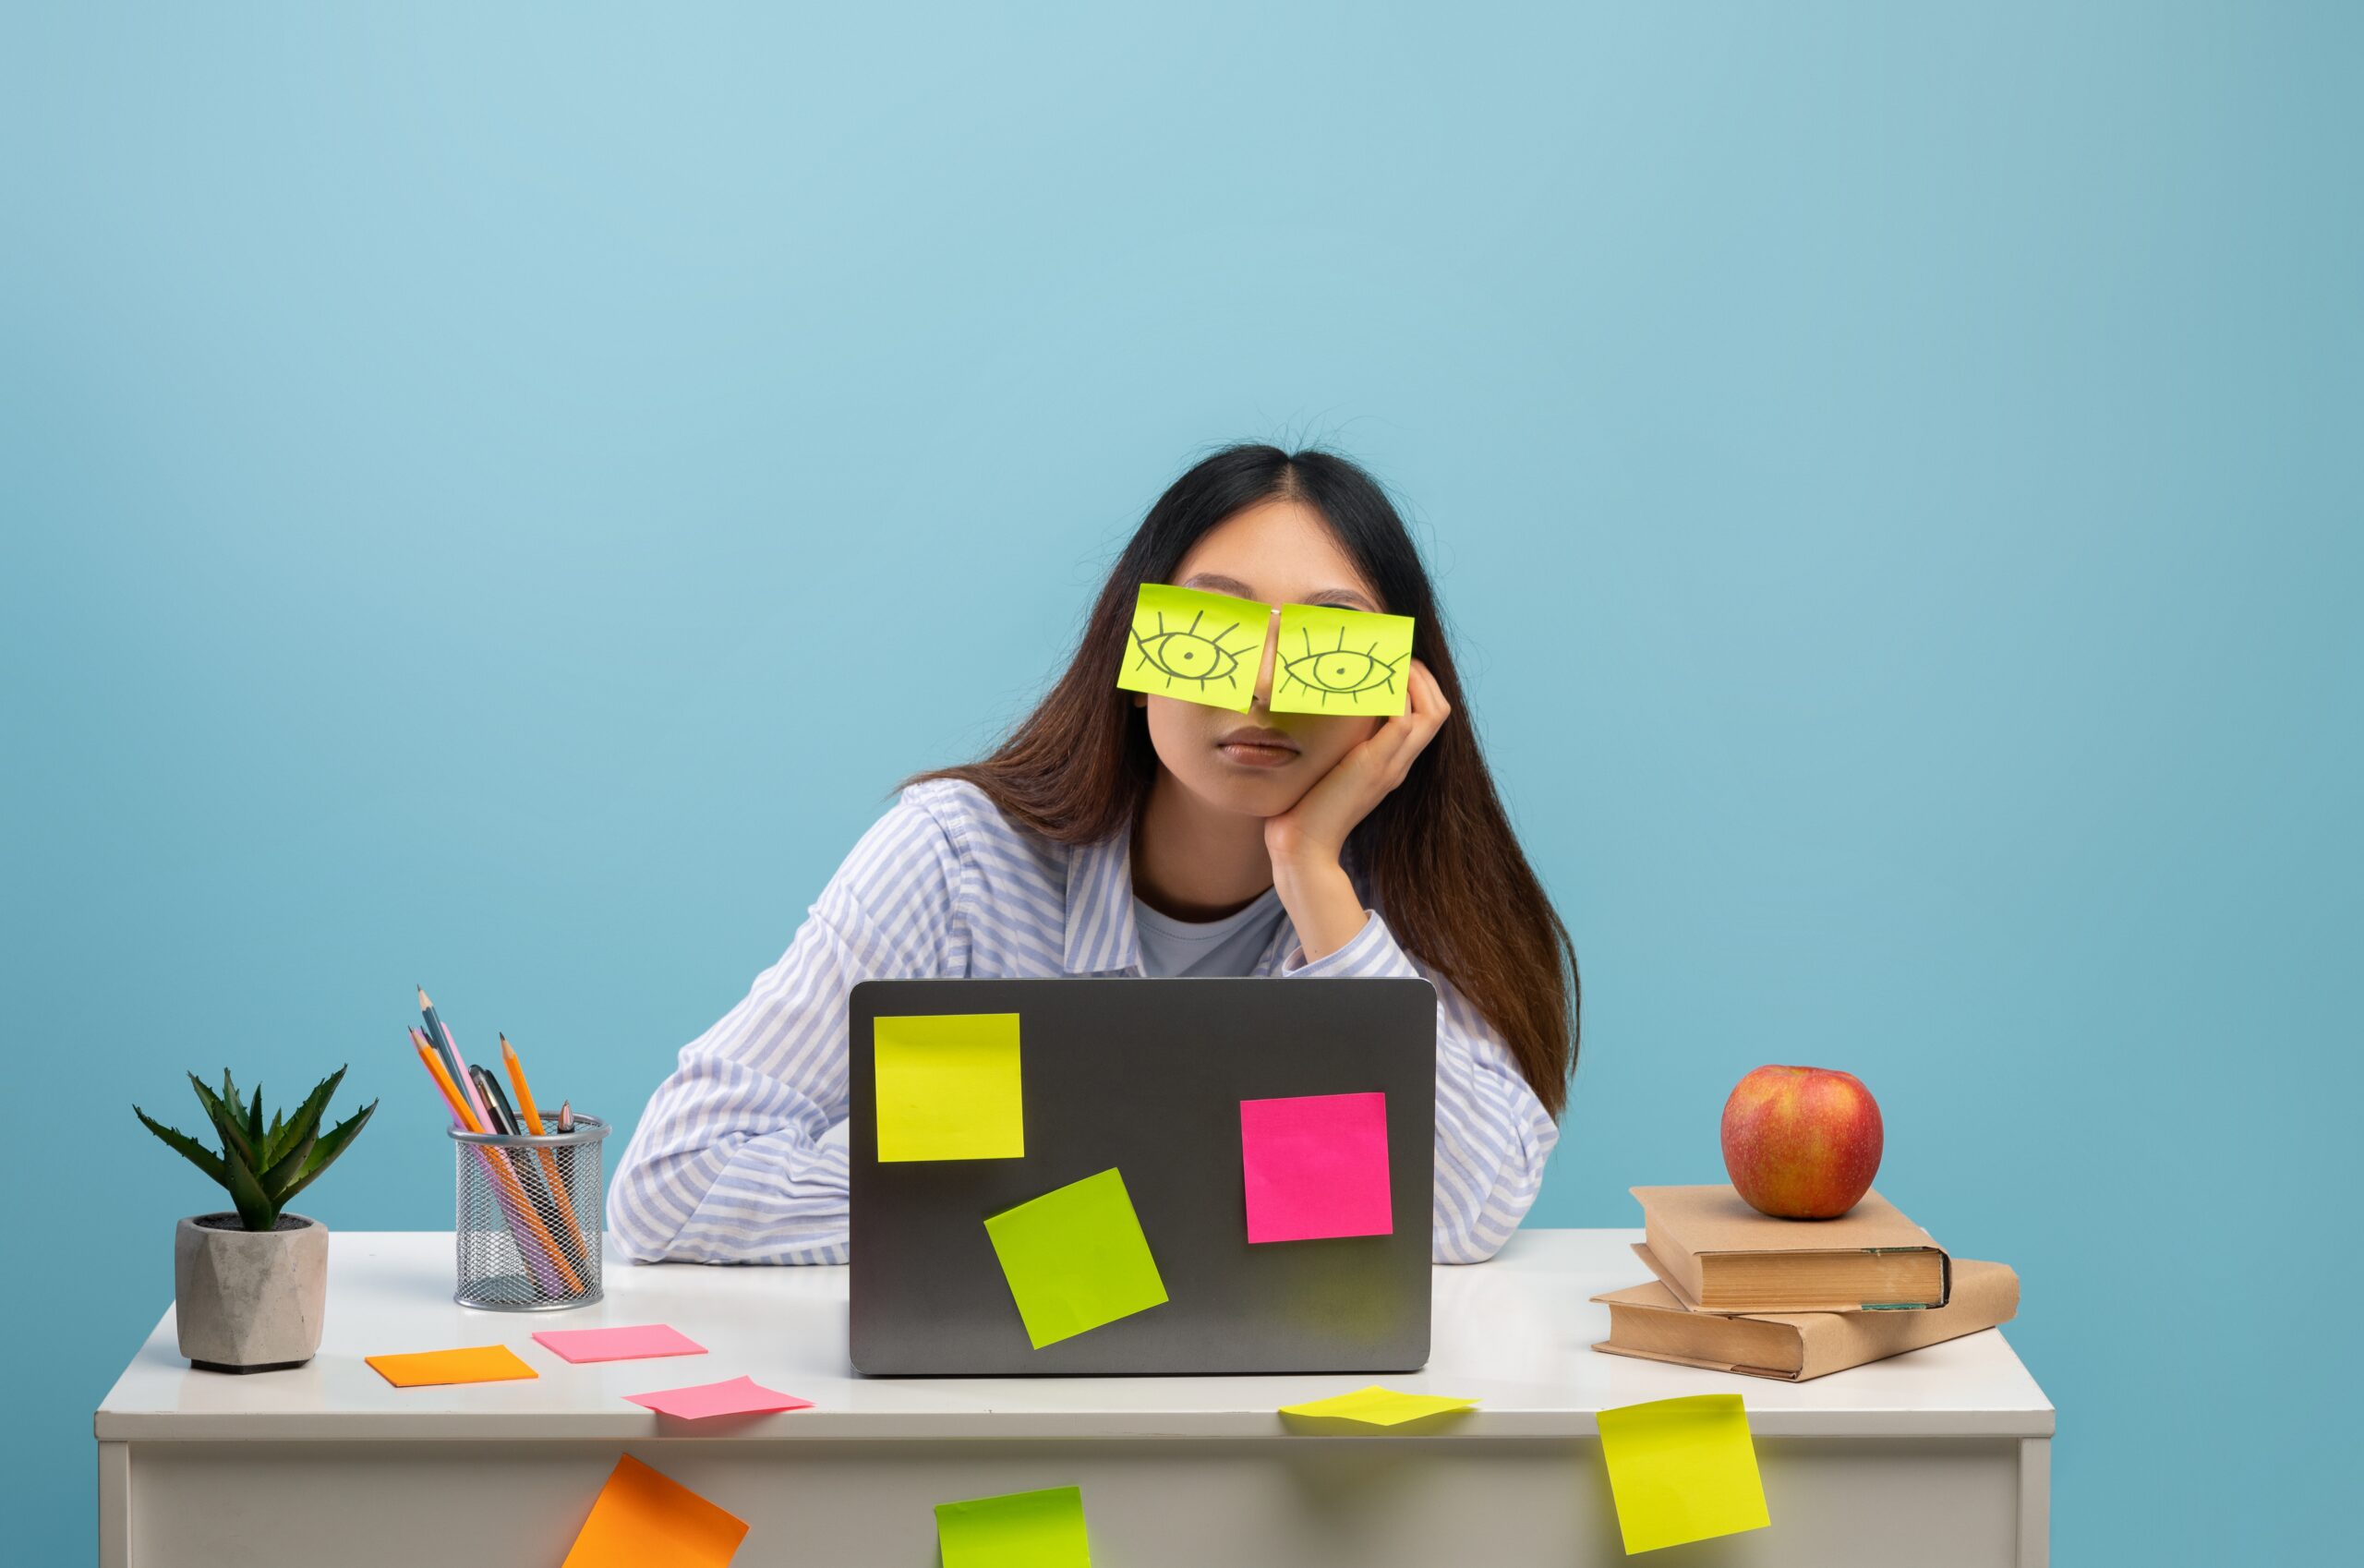 Estou saturado do trabalho em plena crise, o que faço?| Fonte: Shutterstock